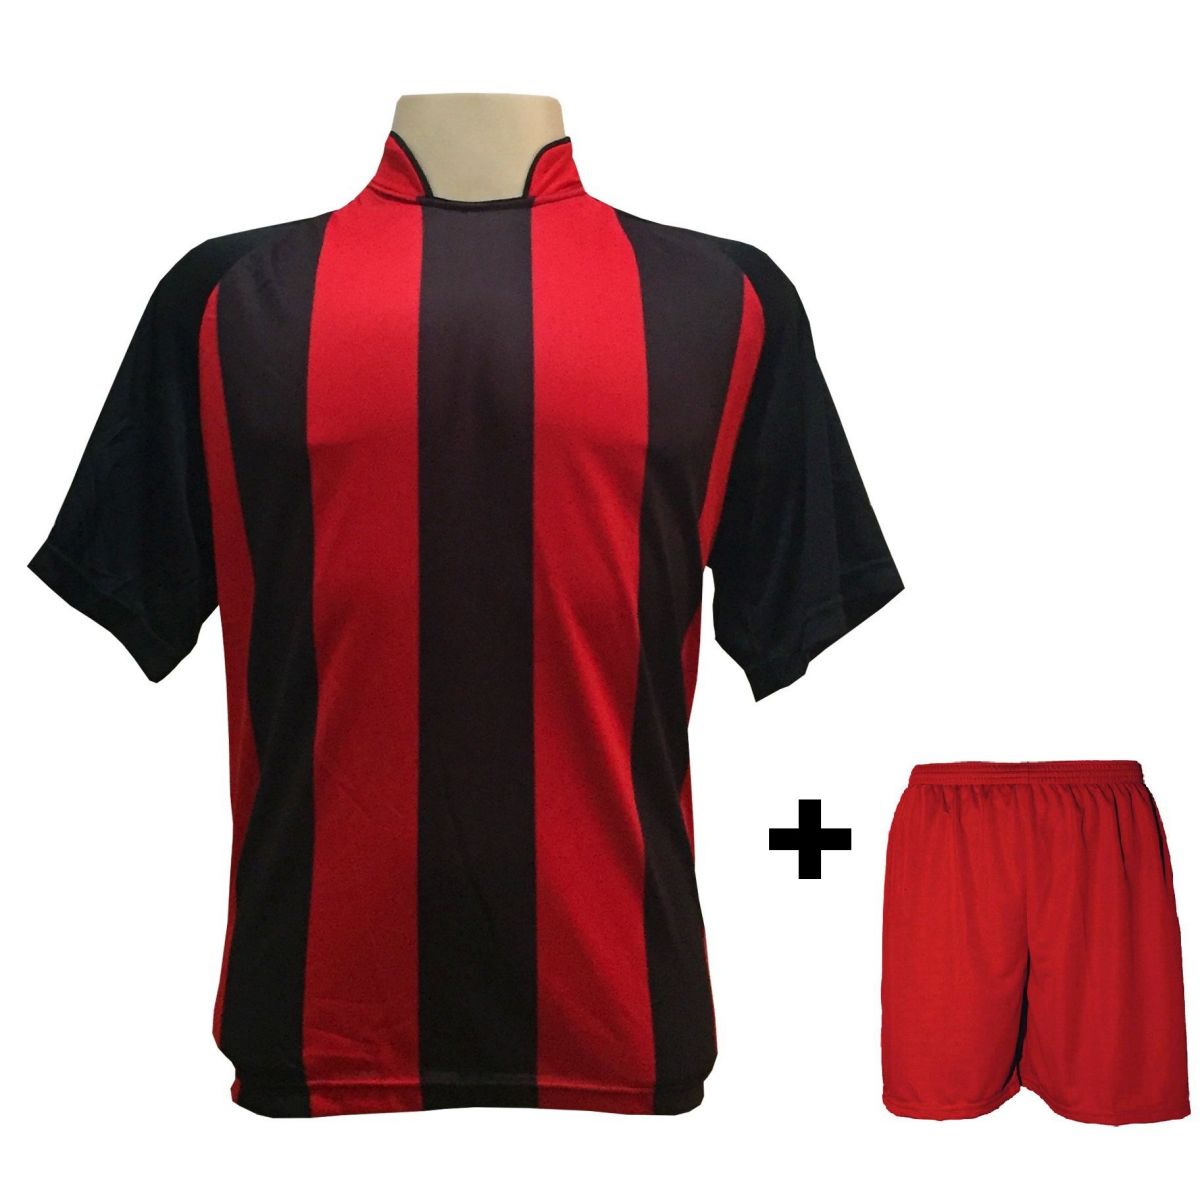 Uniforme Esportivo com 12 camisas modelo Milan Preto/Vermelho + 12 calções modelo Madrid Vermelho + Brindes